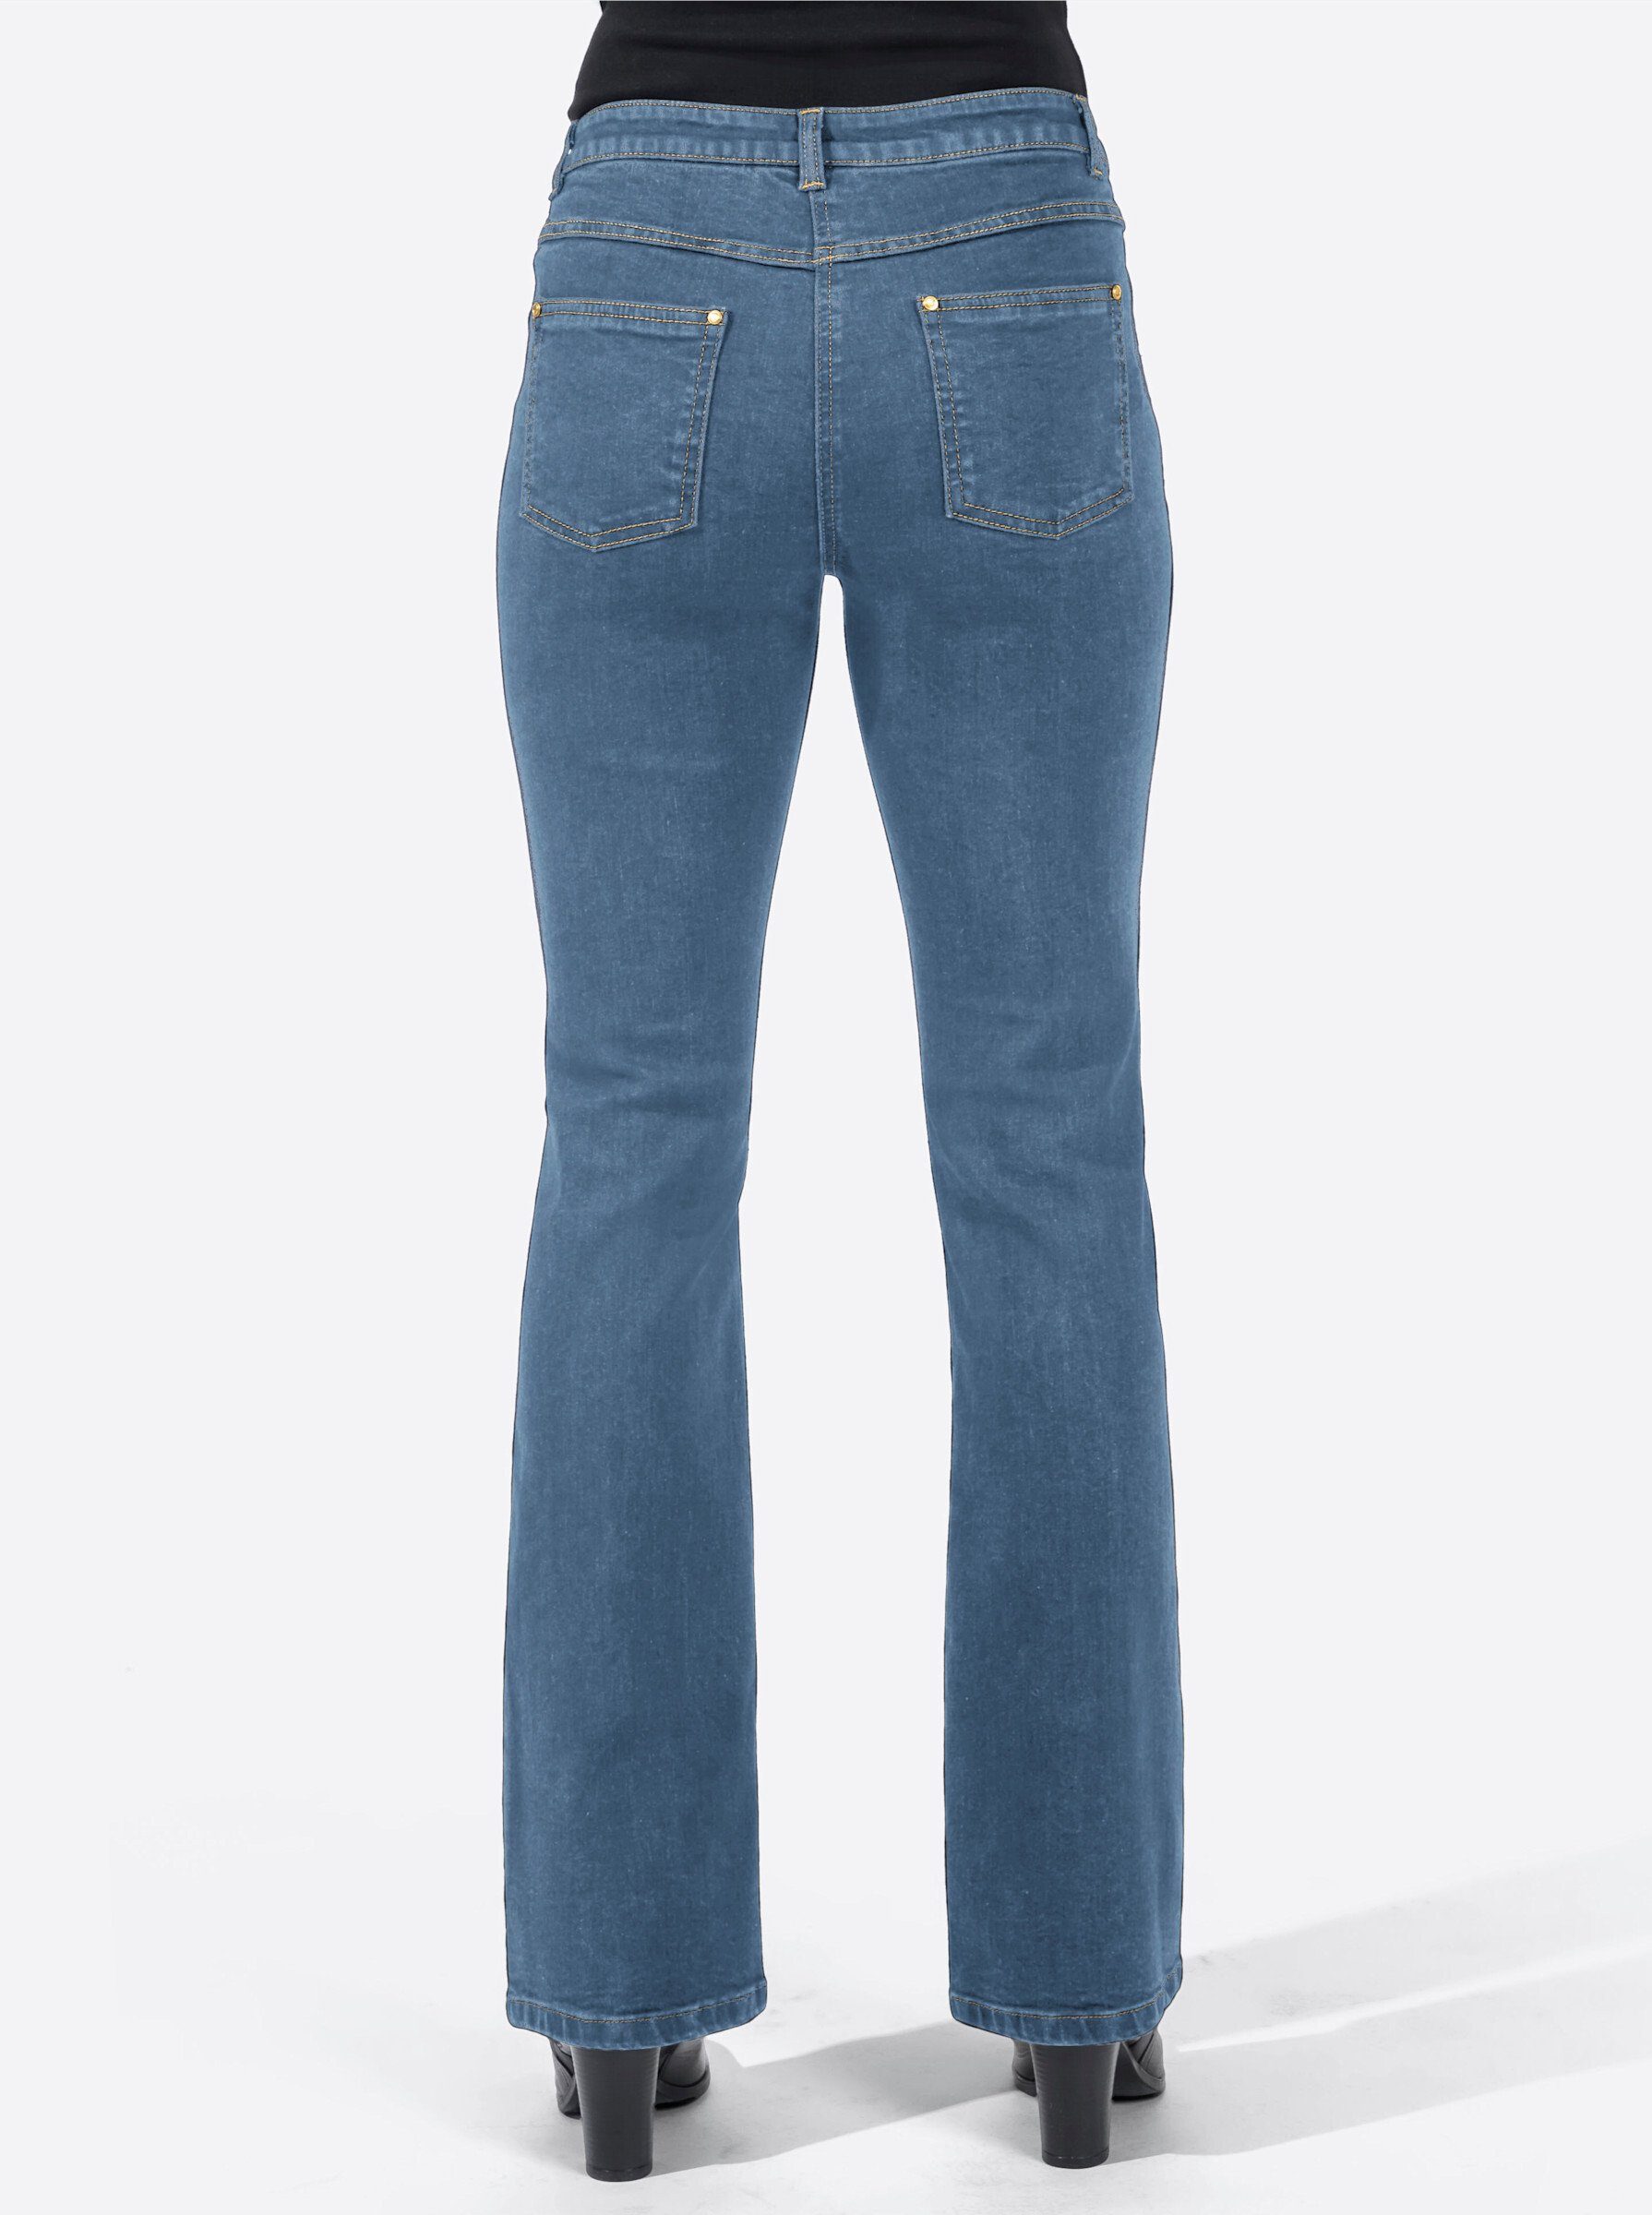 Jeans WEIDEN Bequeme WITT blue-bleached